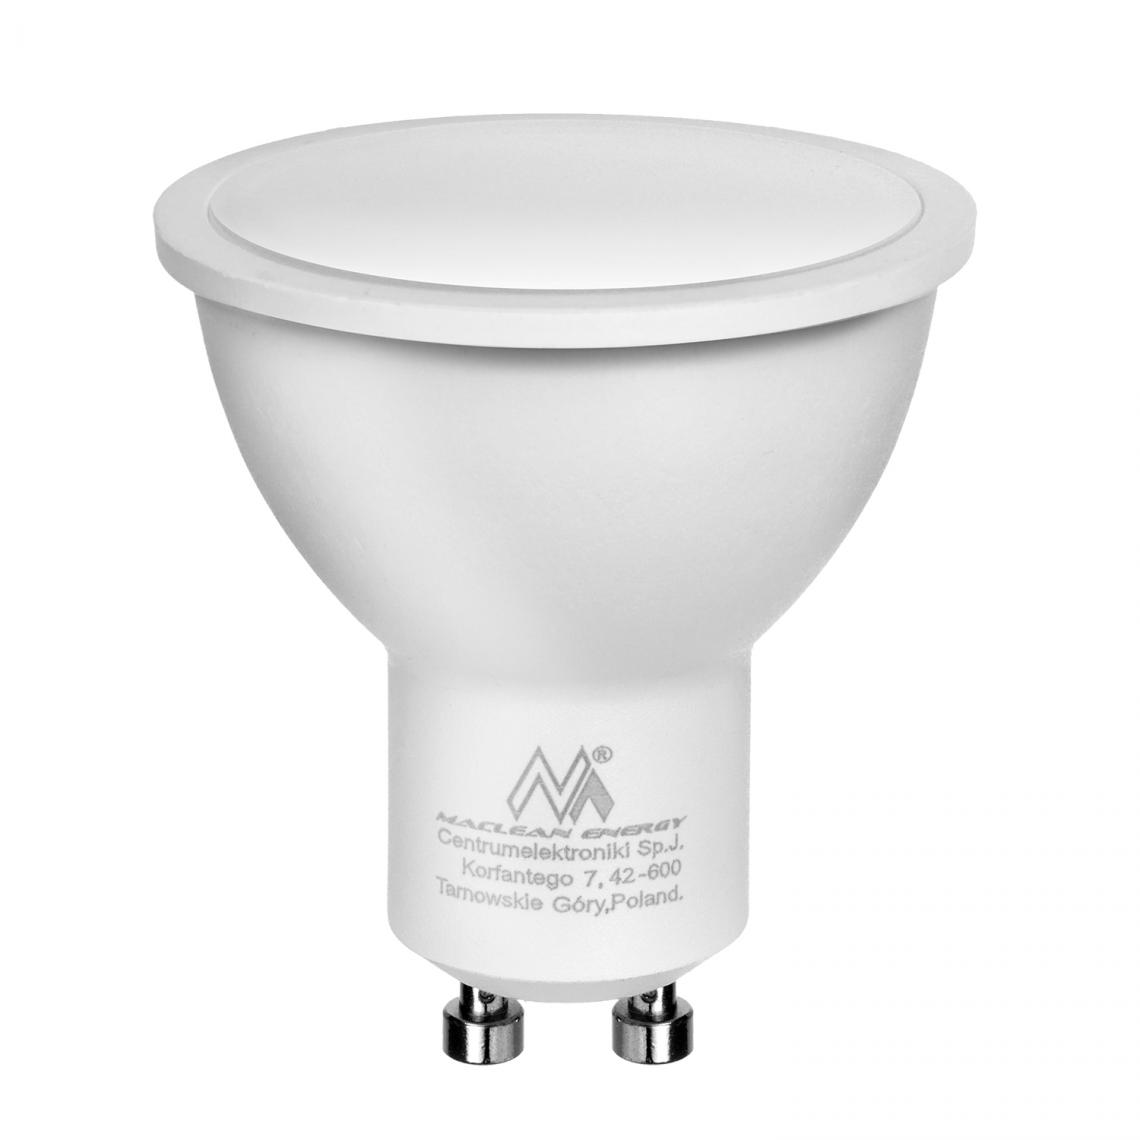 Maclean - Ampoule LED GU10 7W Maclean Energy MCE437 NW blanc neutre - Ampoules LED